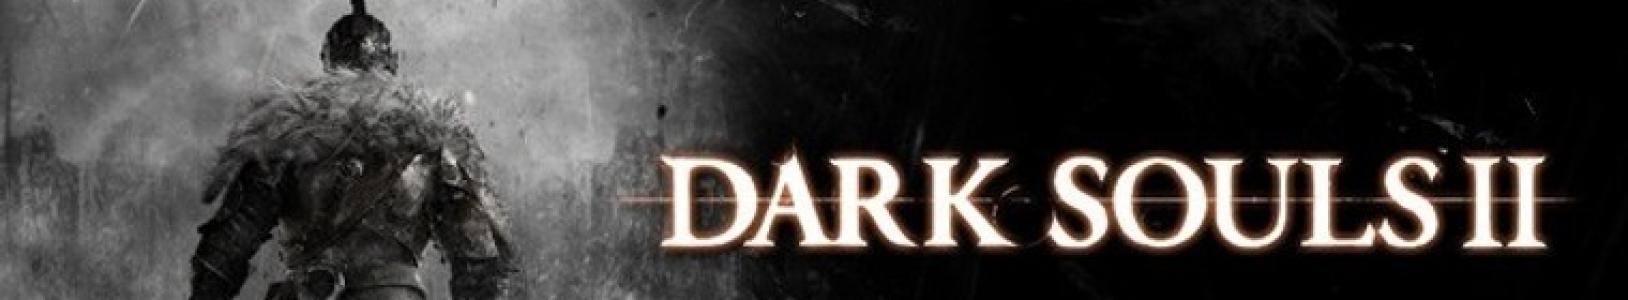 Dark Souls II banner